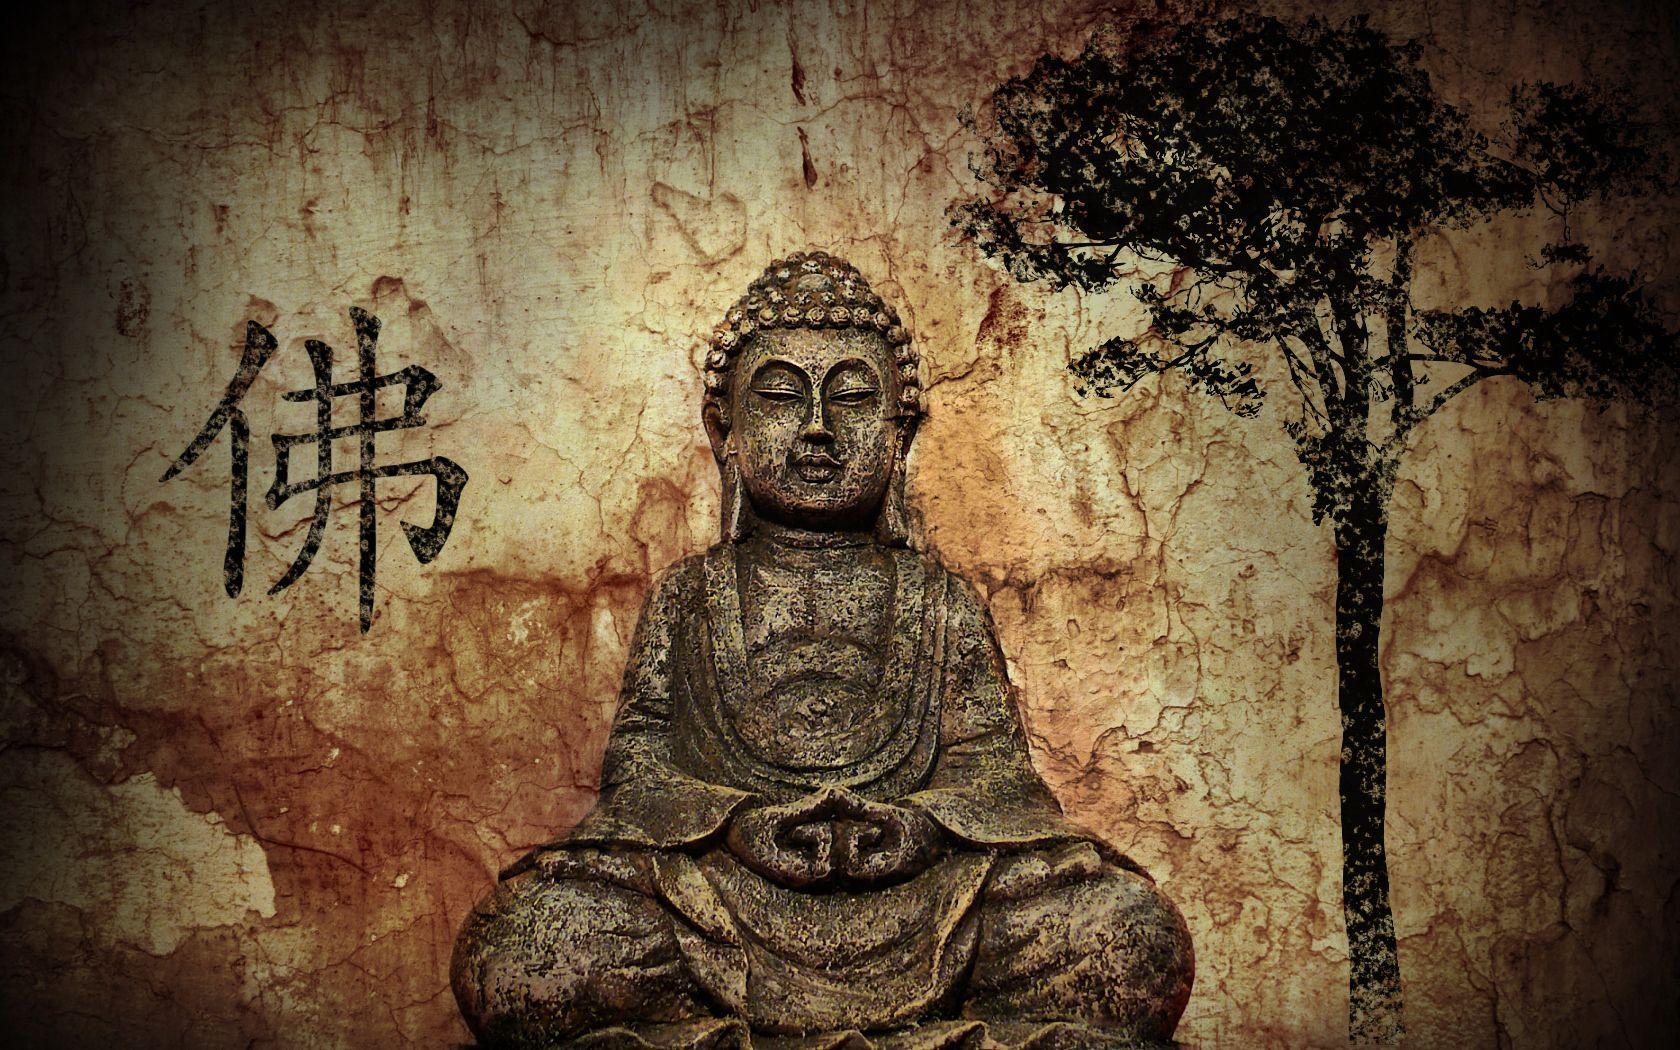 zen buddhism wallpaper